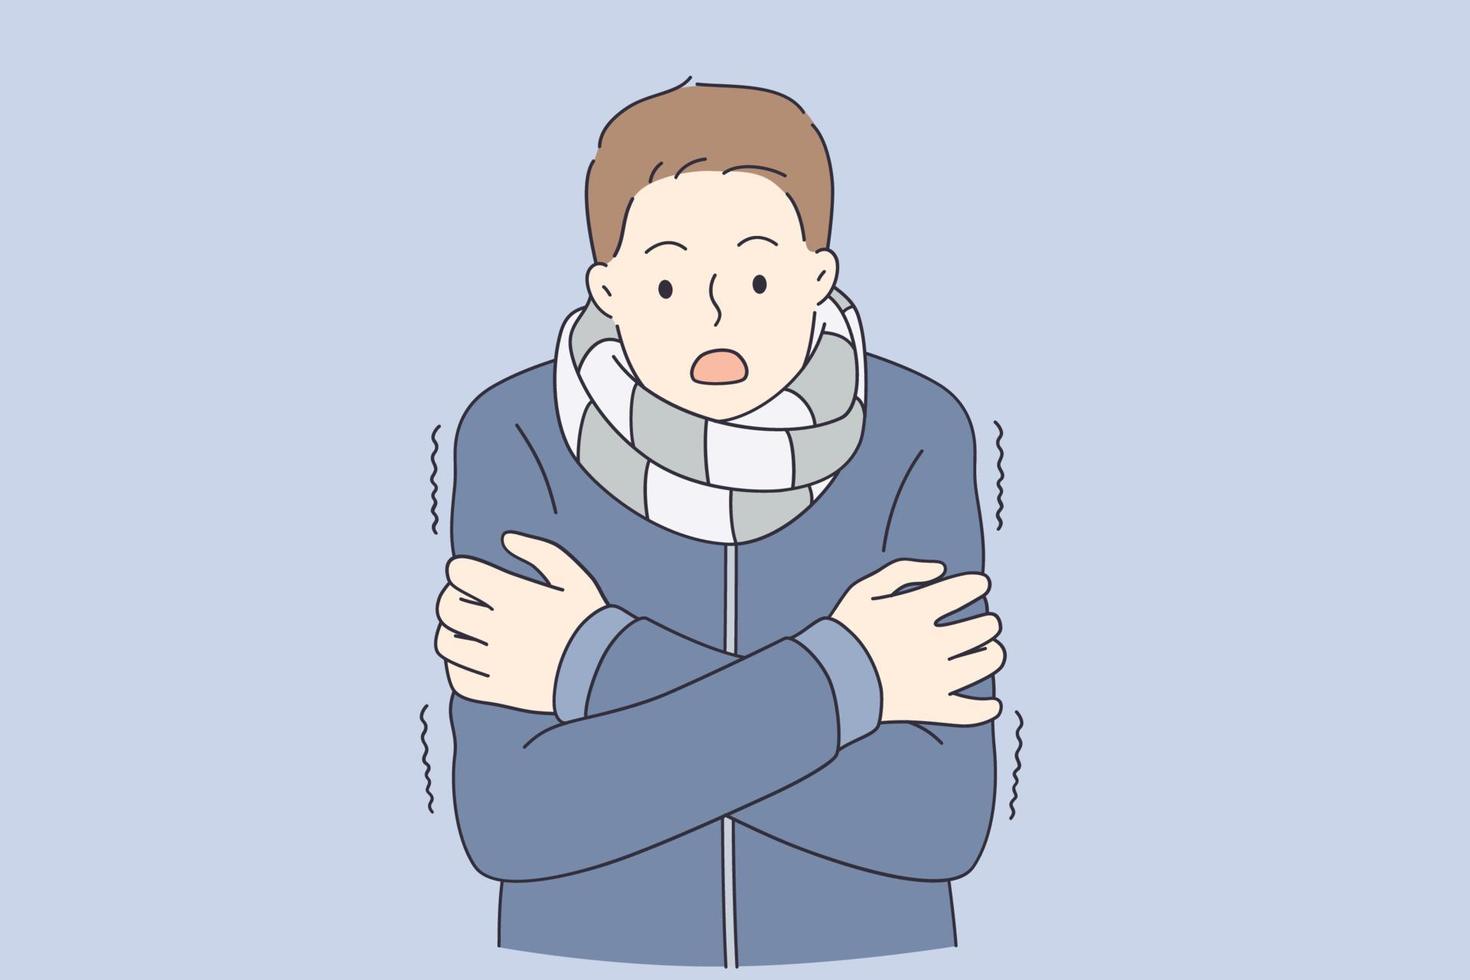 sensation de concept froid et gelé. jeune homme en manteau chaud et écharpe debout se sentant froid avec illustration vectorielle regard surpris vecteur